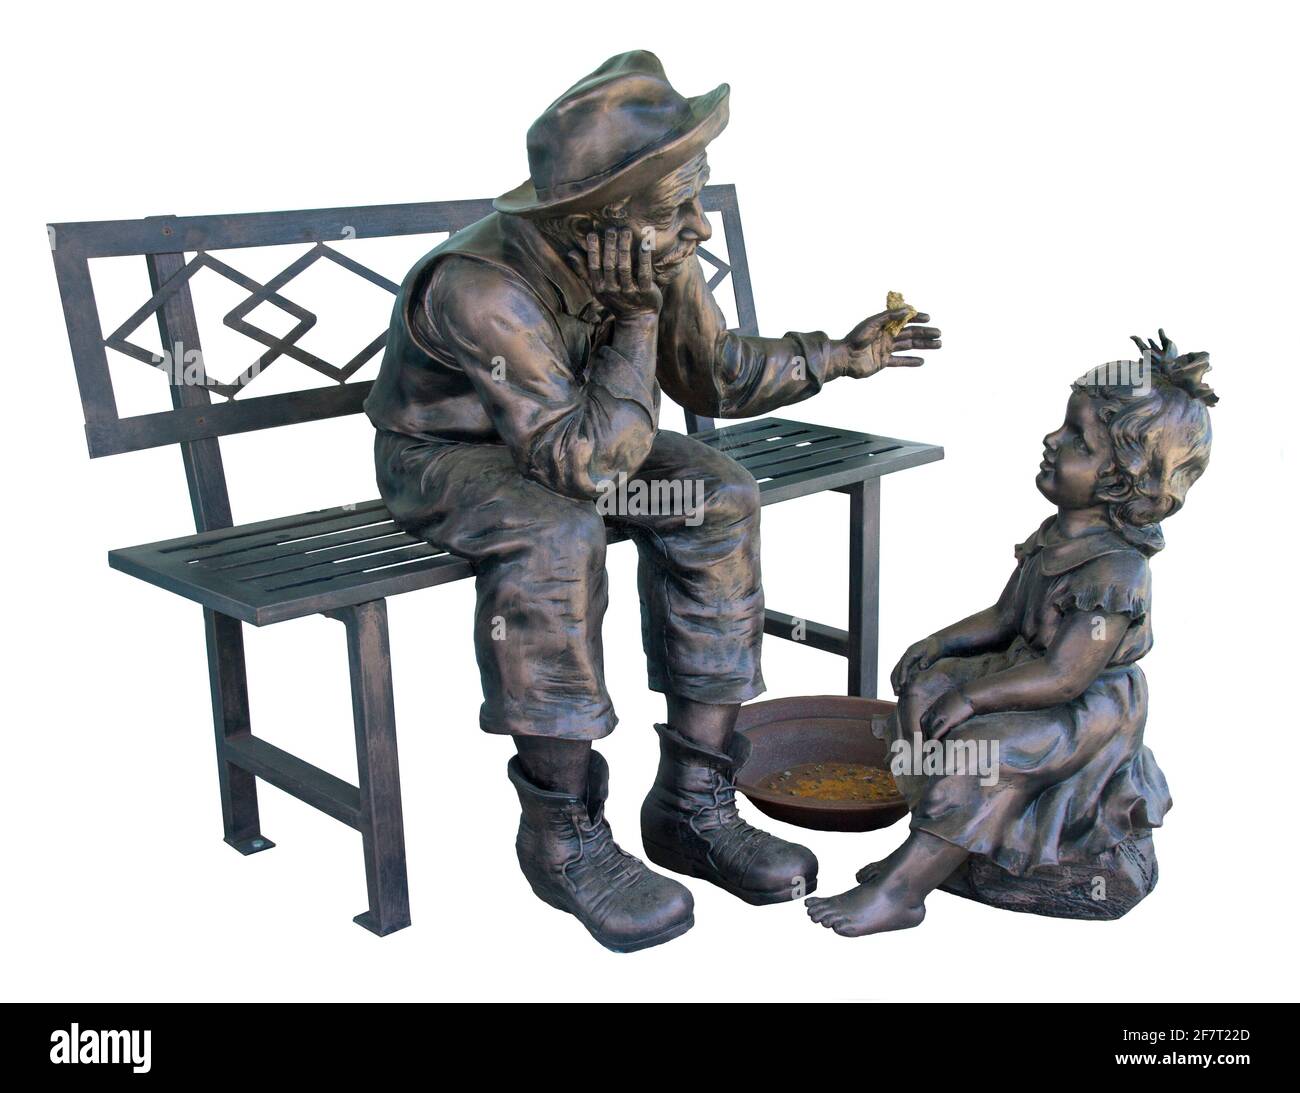 Magnifique sculpture en bronze très détaillée de l'homme / du mineur d'or assis sur un banc montrant un nugget d'or à un petit enfant - sur fond blanc Banque D'Images